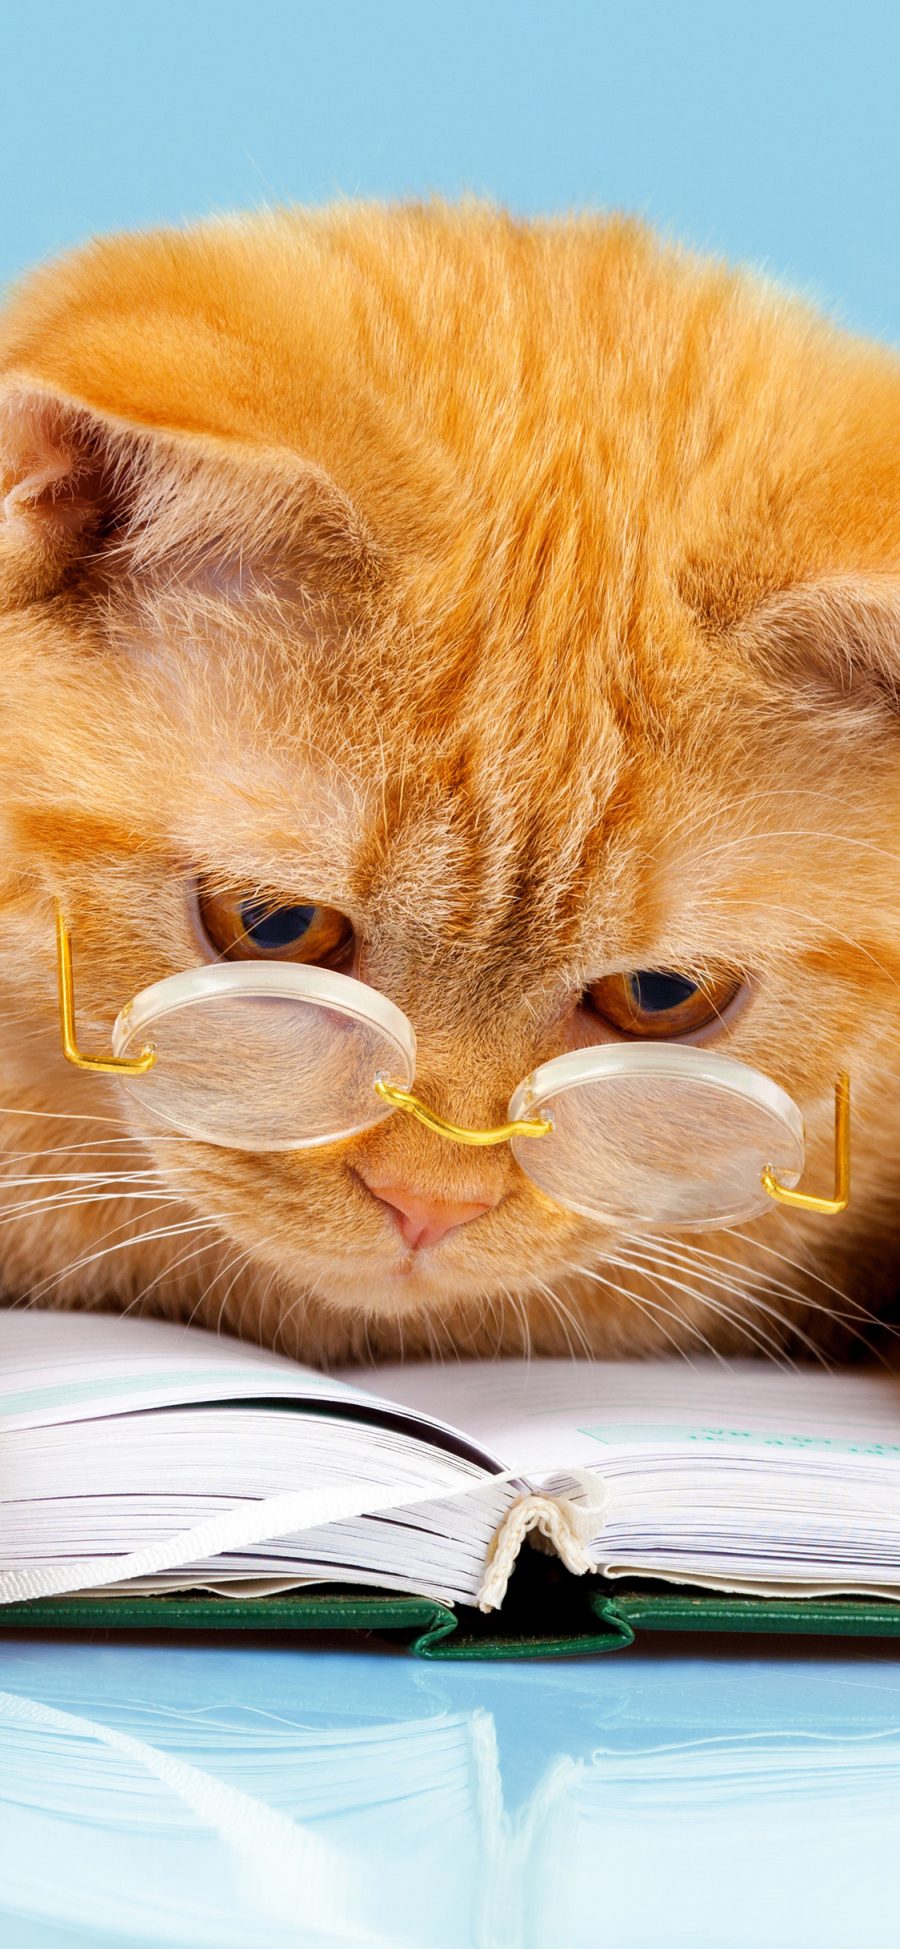 [2436×1125]猫咪 阅读 书本 眼镜 喵星人 宠物 苹果手机壁纸图片